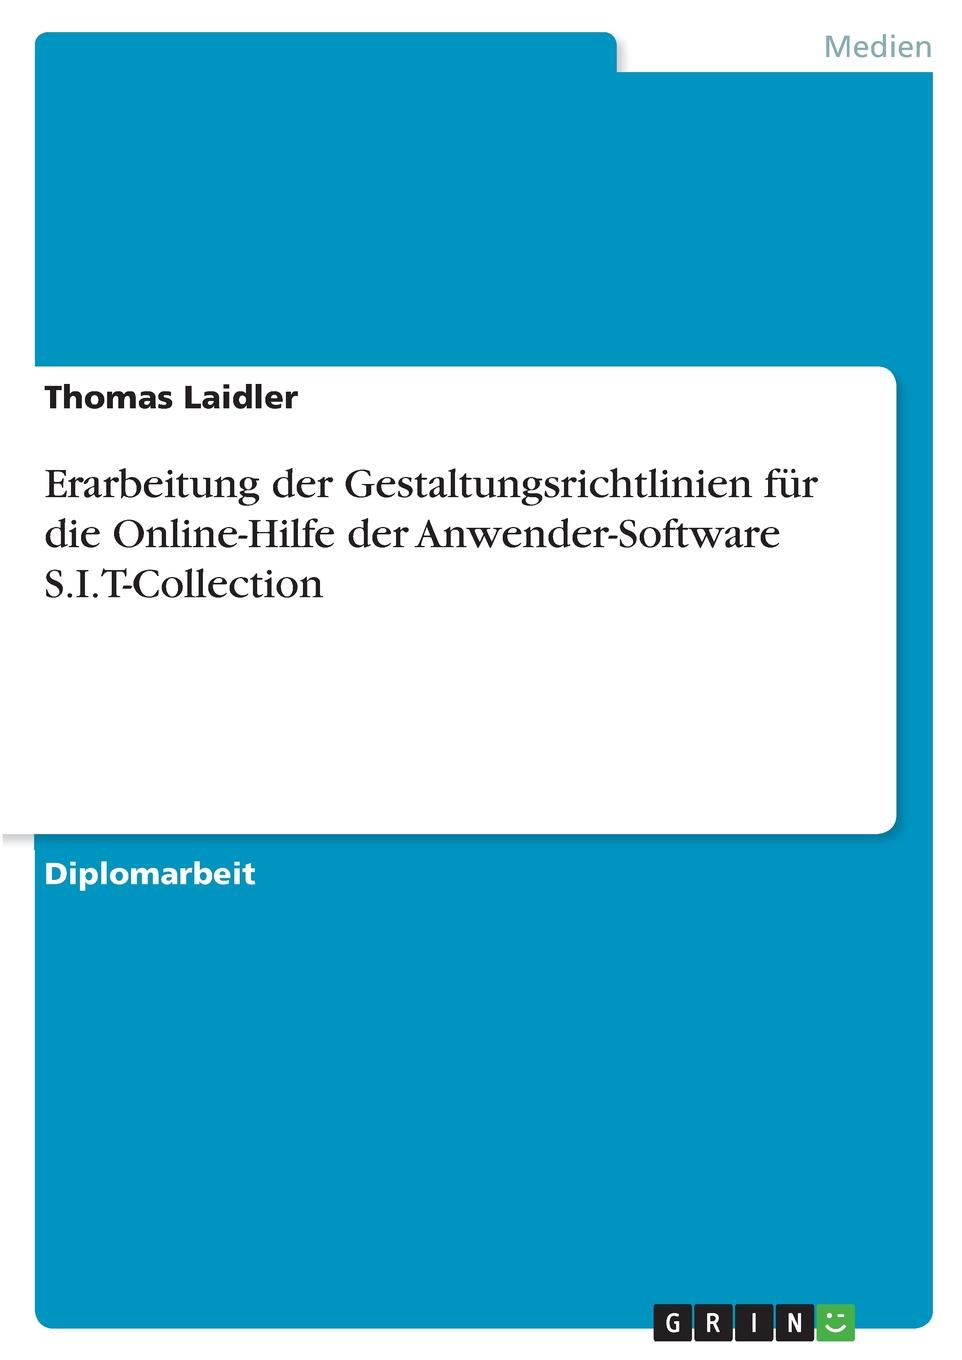 Thomas Laidler Erarbeitung der Gestaltungsrichtlinien fur die Online-Hilfe der Anwender-Software S.I.T-Collection